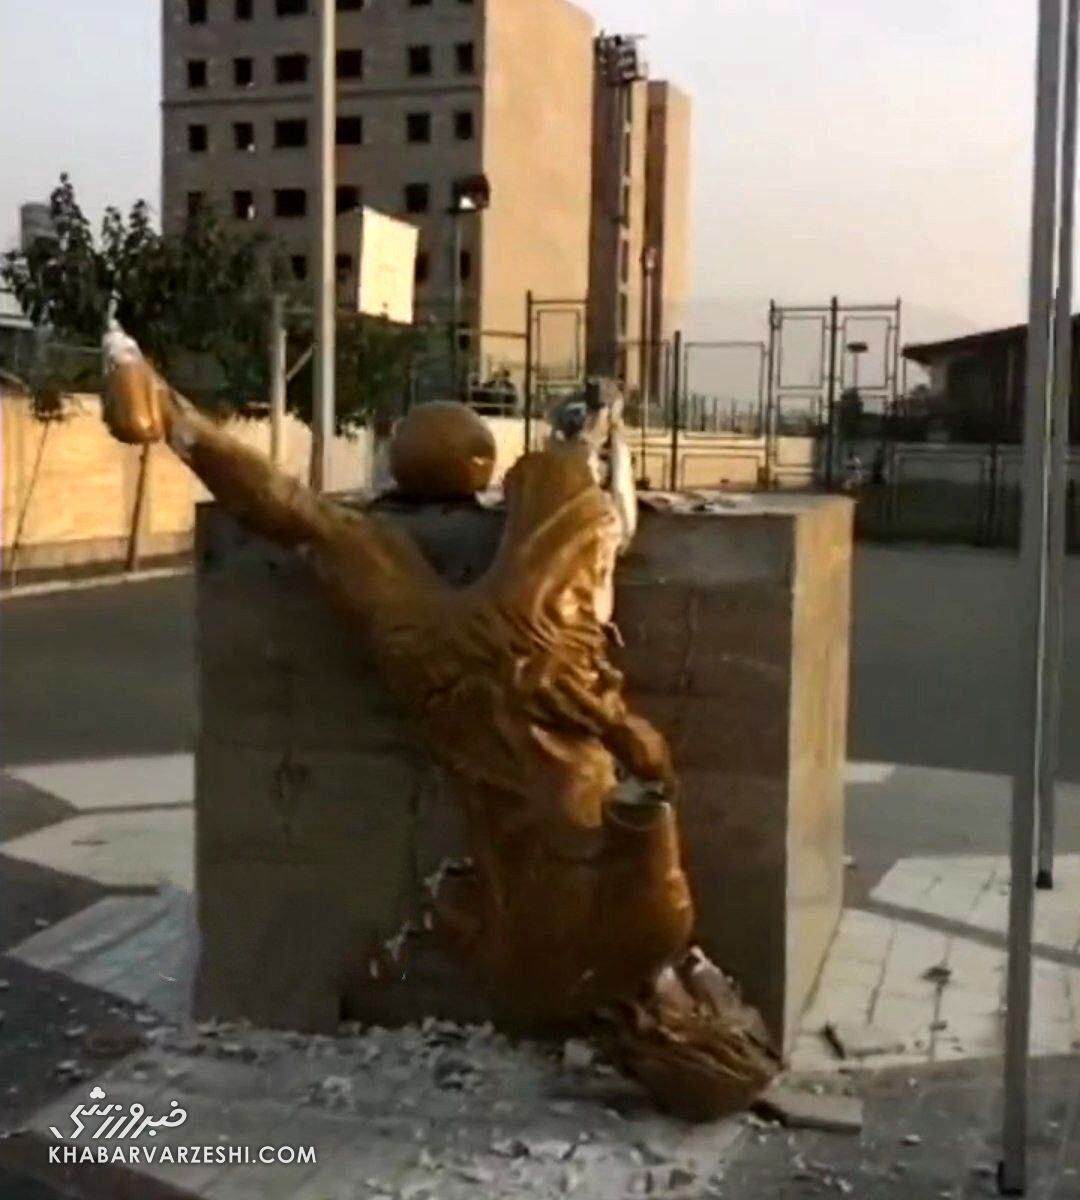 عکس| حمله به یادبود اسطوره فوتبال ایران در کرج/ مجسمه علی کریمی واژگون شد